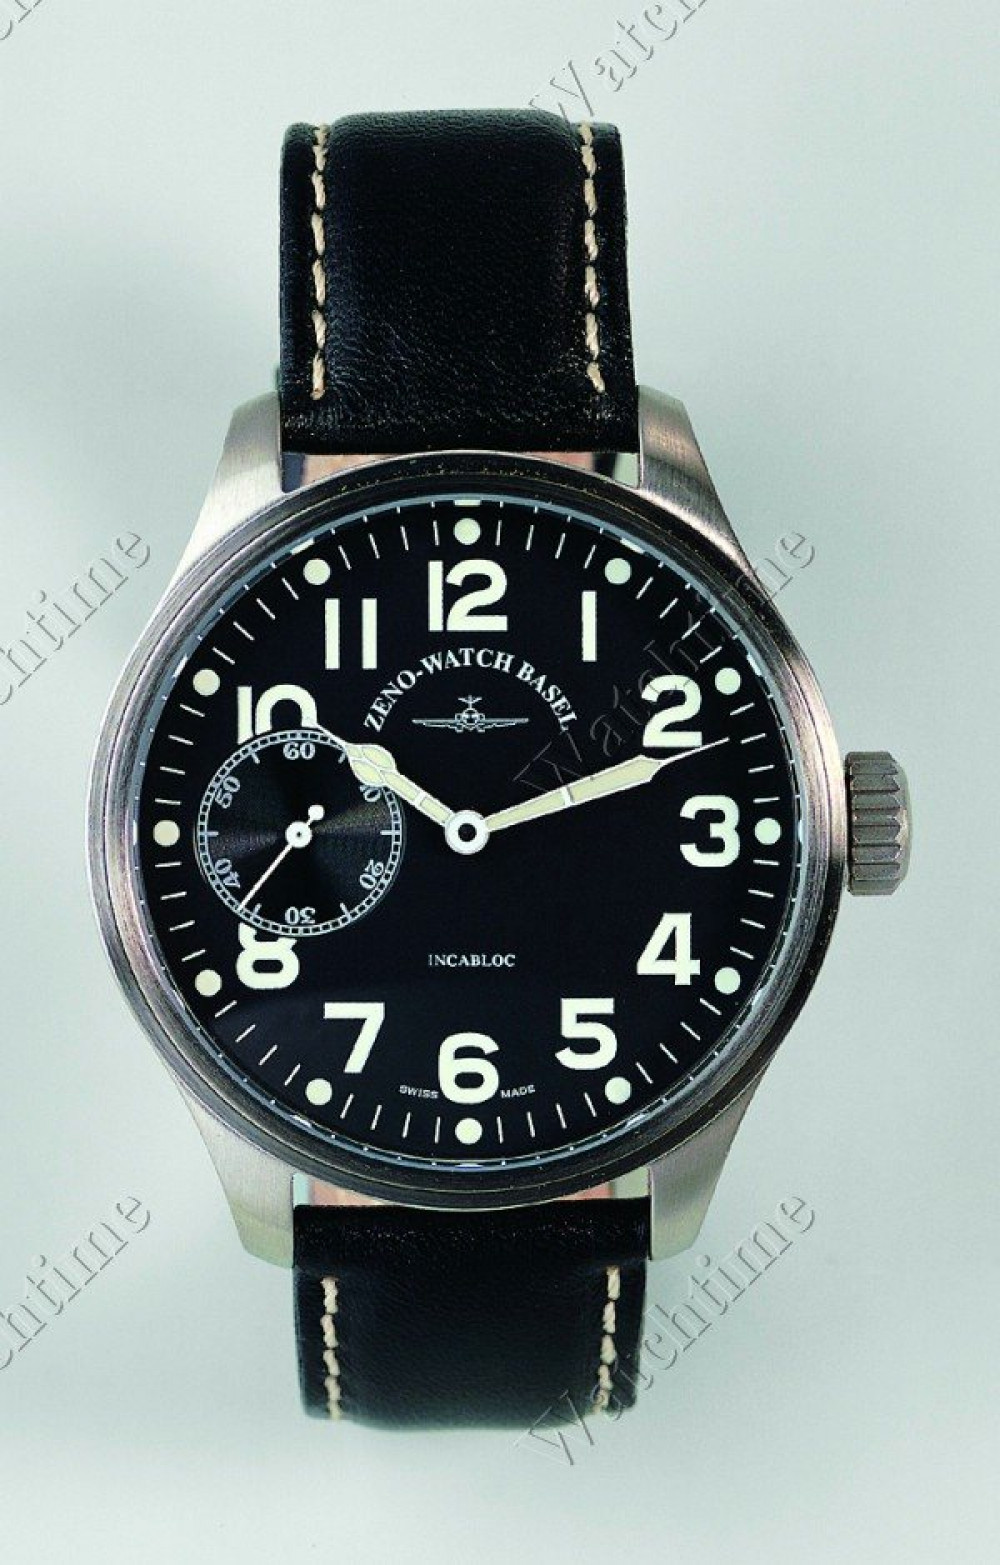 Zegarek firmy Zeno, model Pilot Oversized Handaufzug